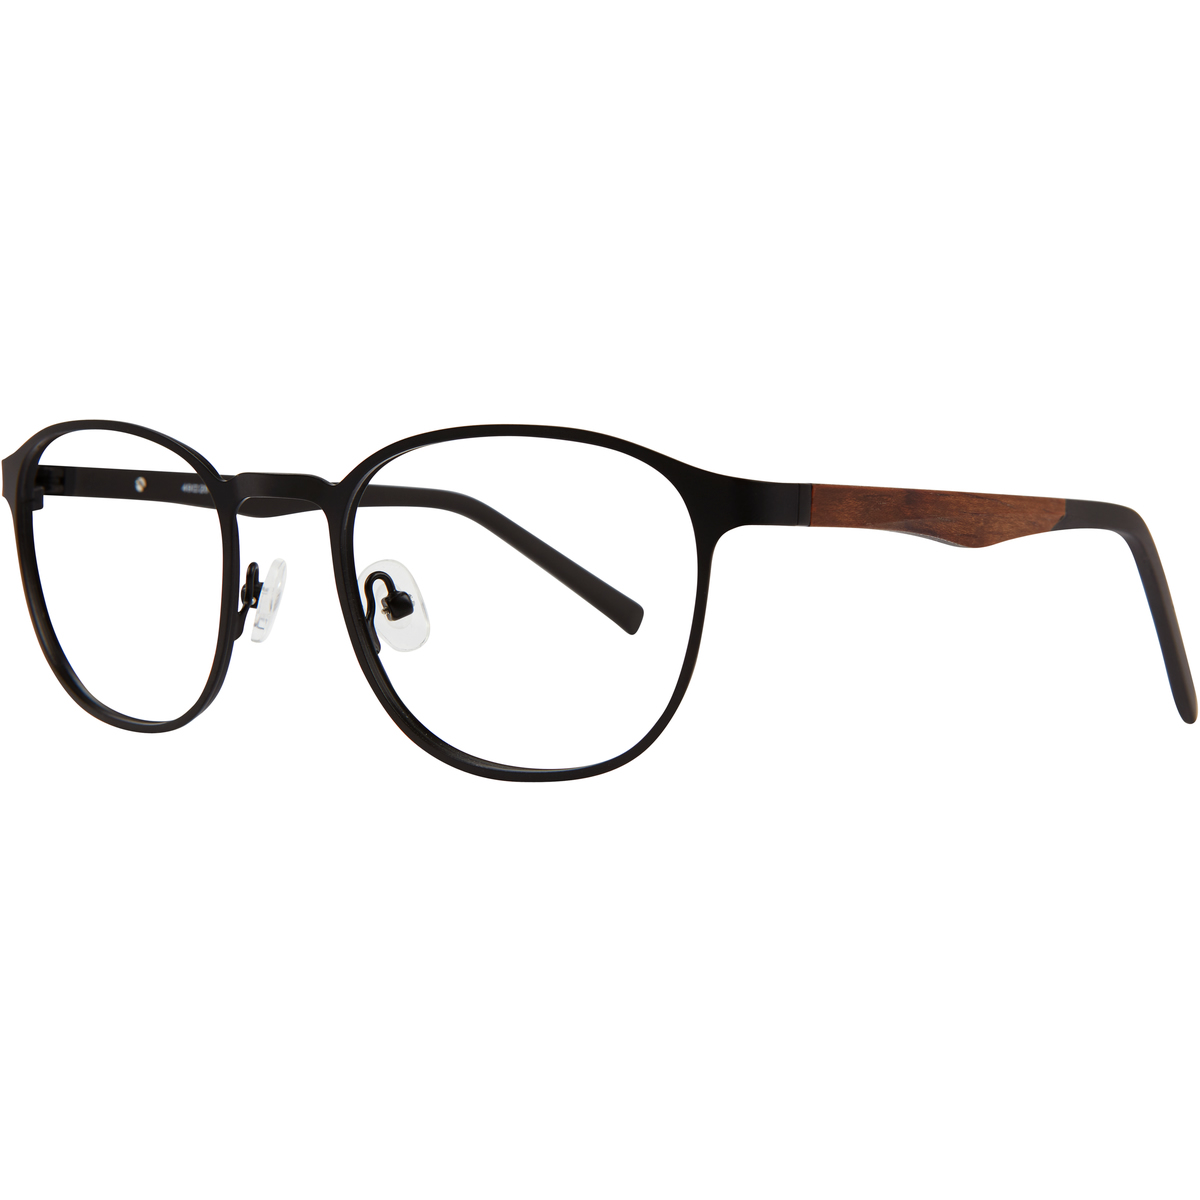 Paul Costelloe 5216 Stainless Steel Glasses | Buy Glasses, Glasses ...